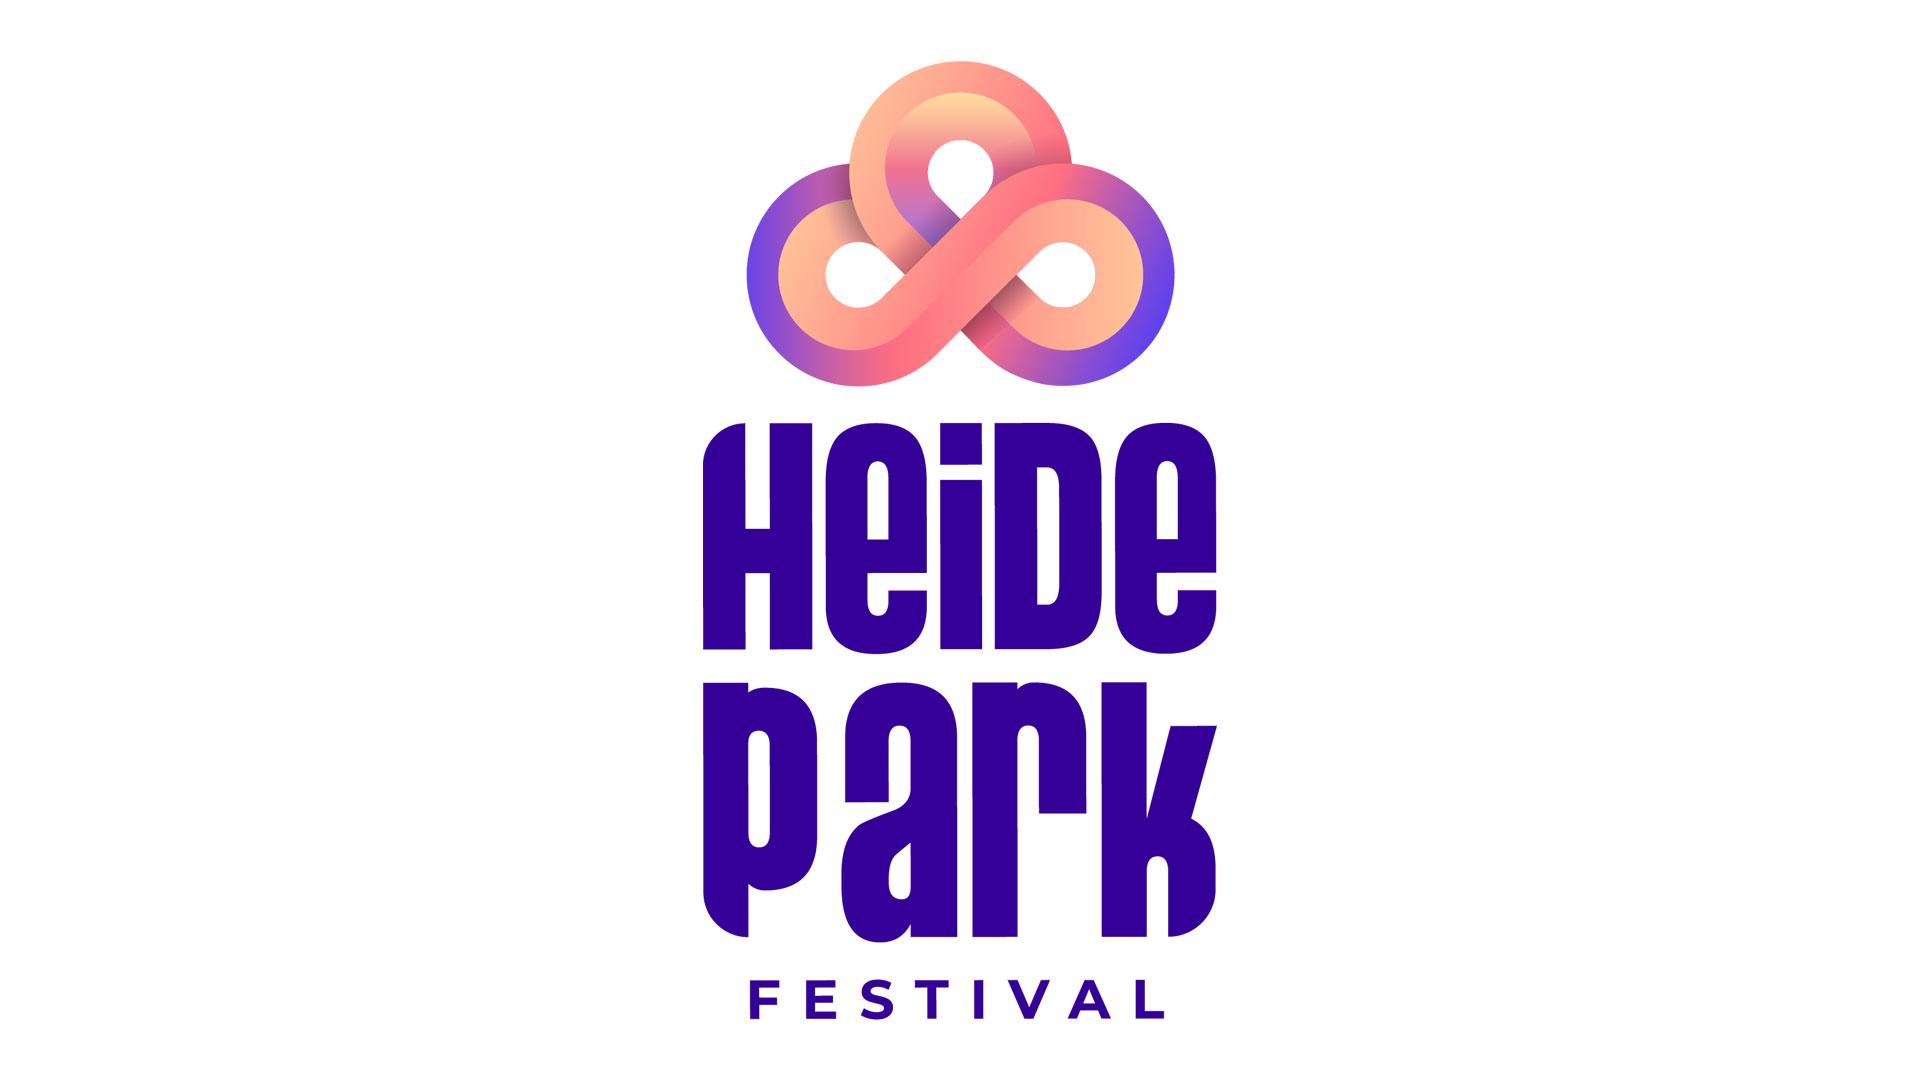 Heide Park Festival